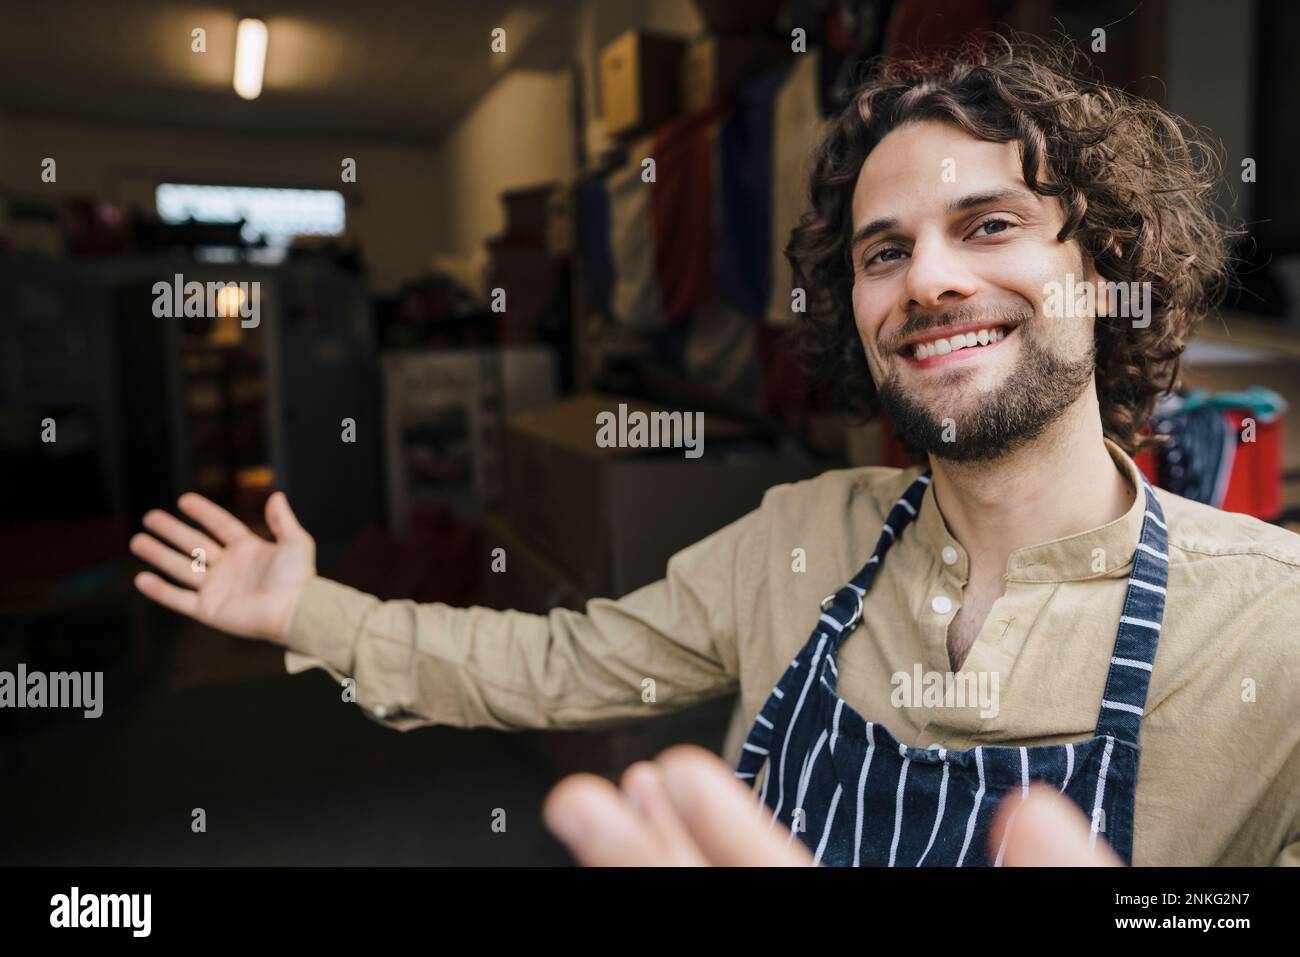 Hombre de negocios joven feliz que lleva delantal que invita en la sala de almacenamiento Foto de stock